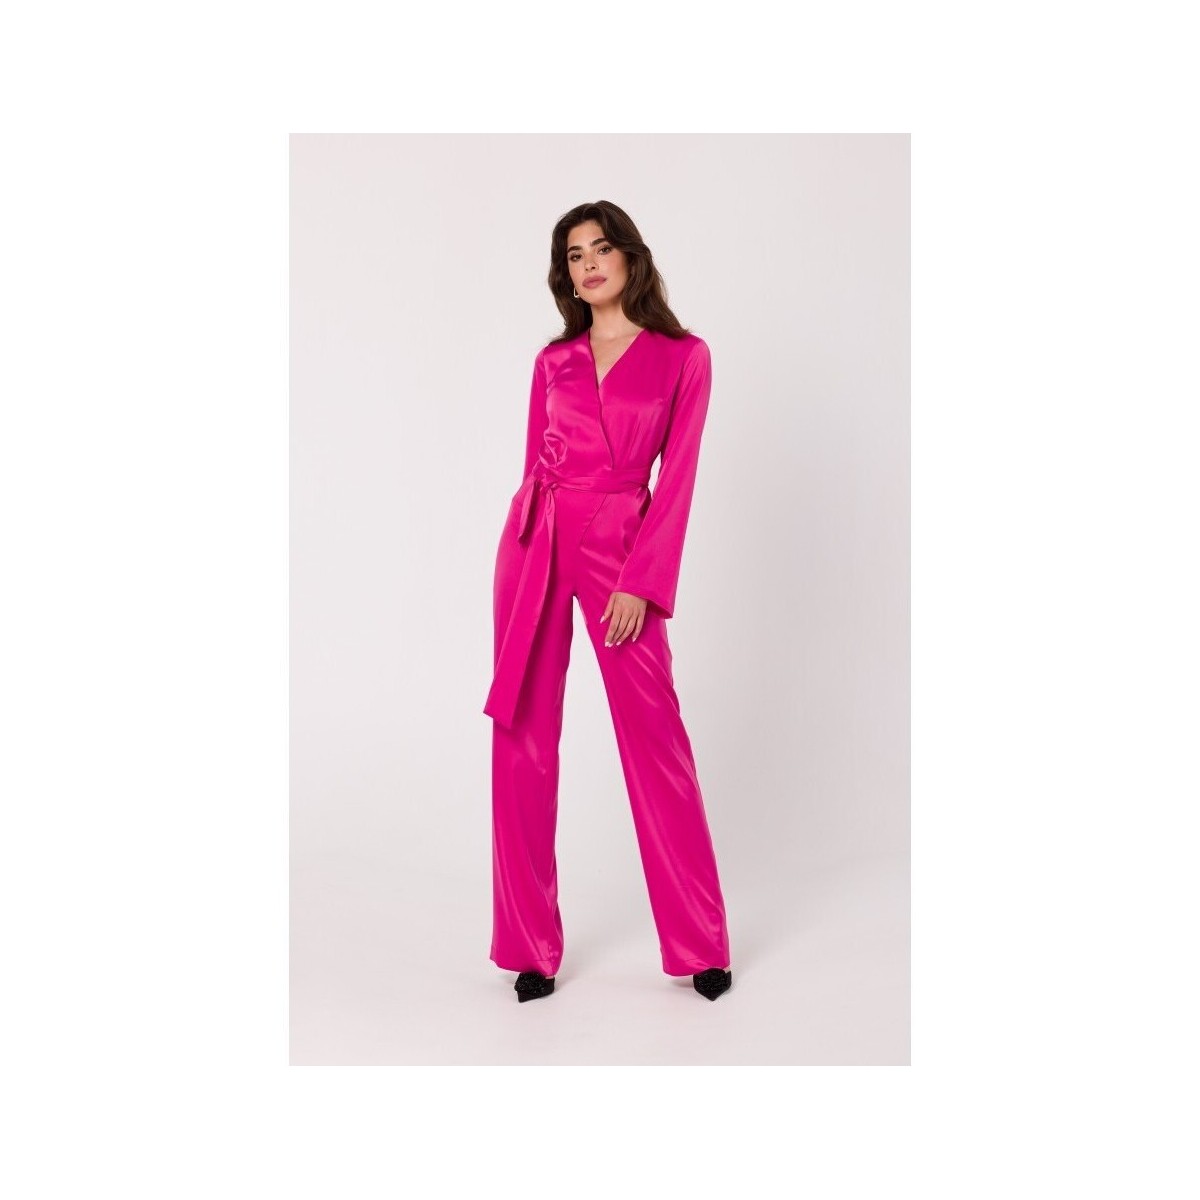 Textil Ženy Overaly / Kalhoty s laclem Makover Dámský overal Pearson K171 růžová Růžová